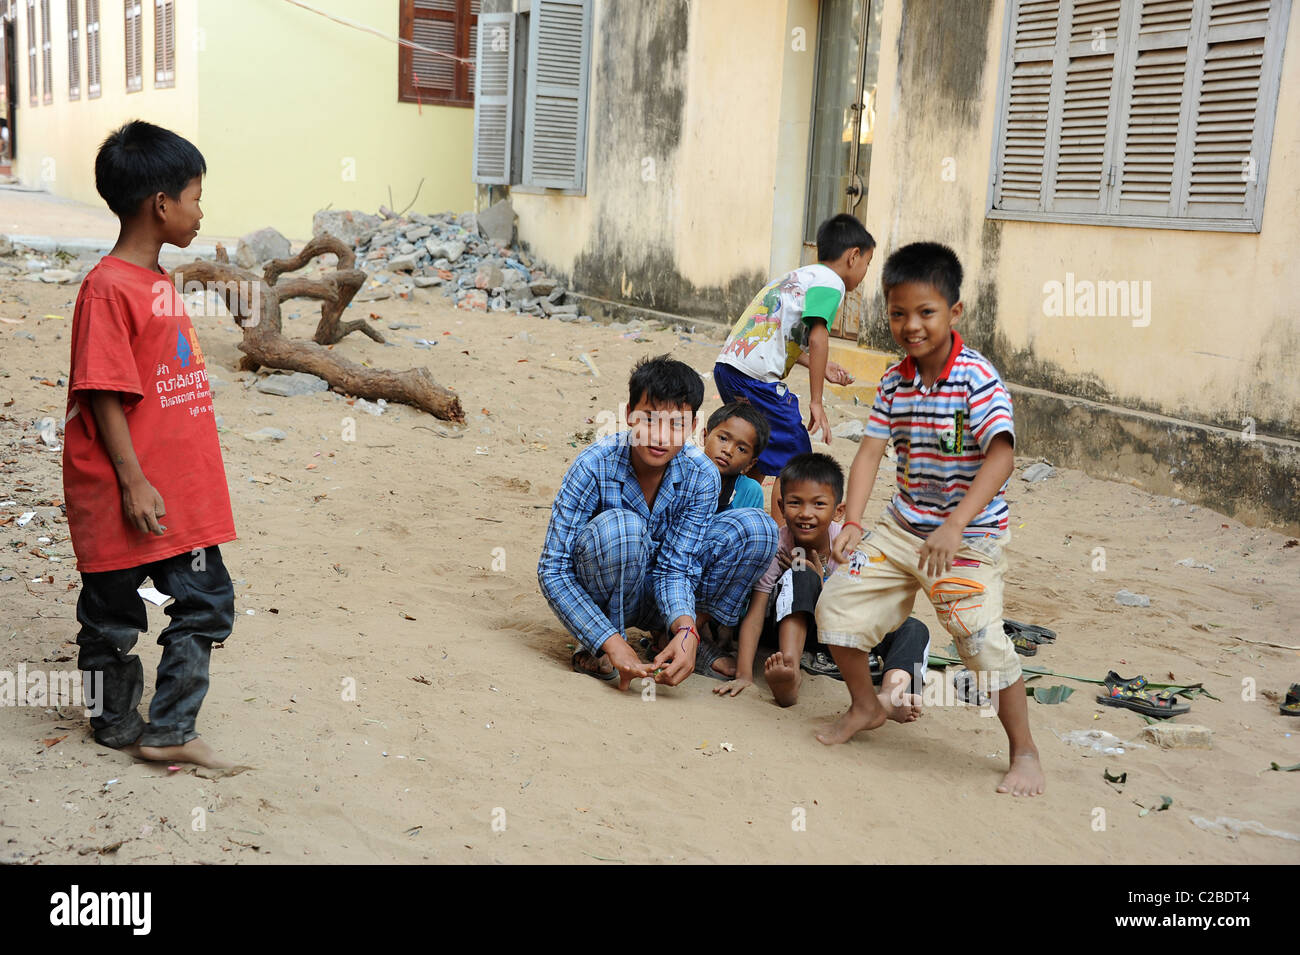 Les garçons jouer avec des billes dans le sable. Ounalom temple de Phnom Penh, Cambodge. Banque D'Images